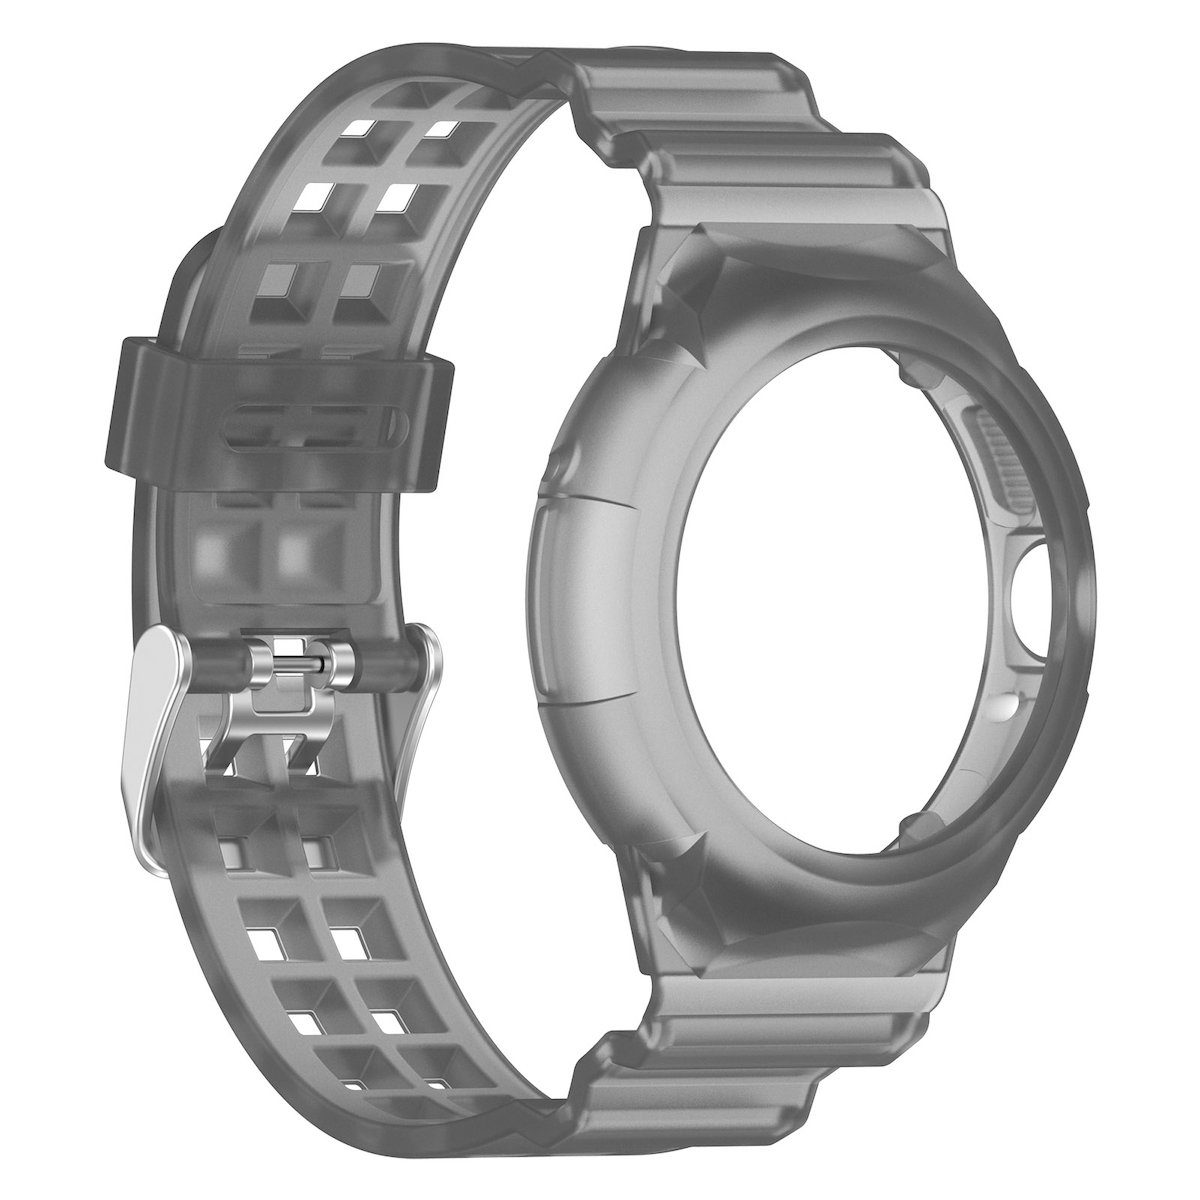 Wigento Smartwatch-Armband 2 Watch Armband Gehäuse Silikon Google Hell Schwarz + 1 mit Pixel Für